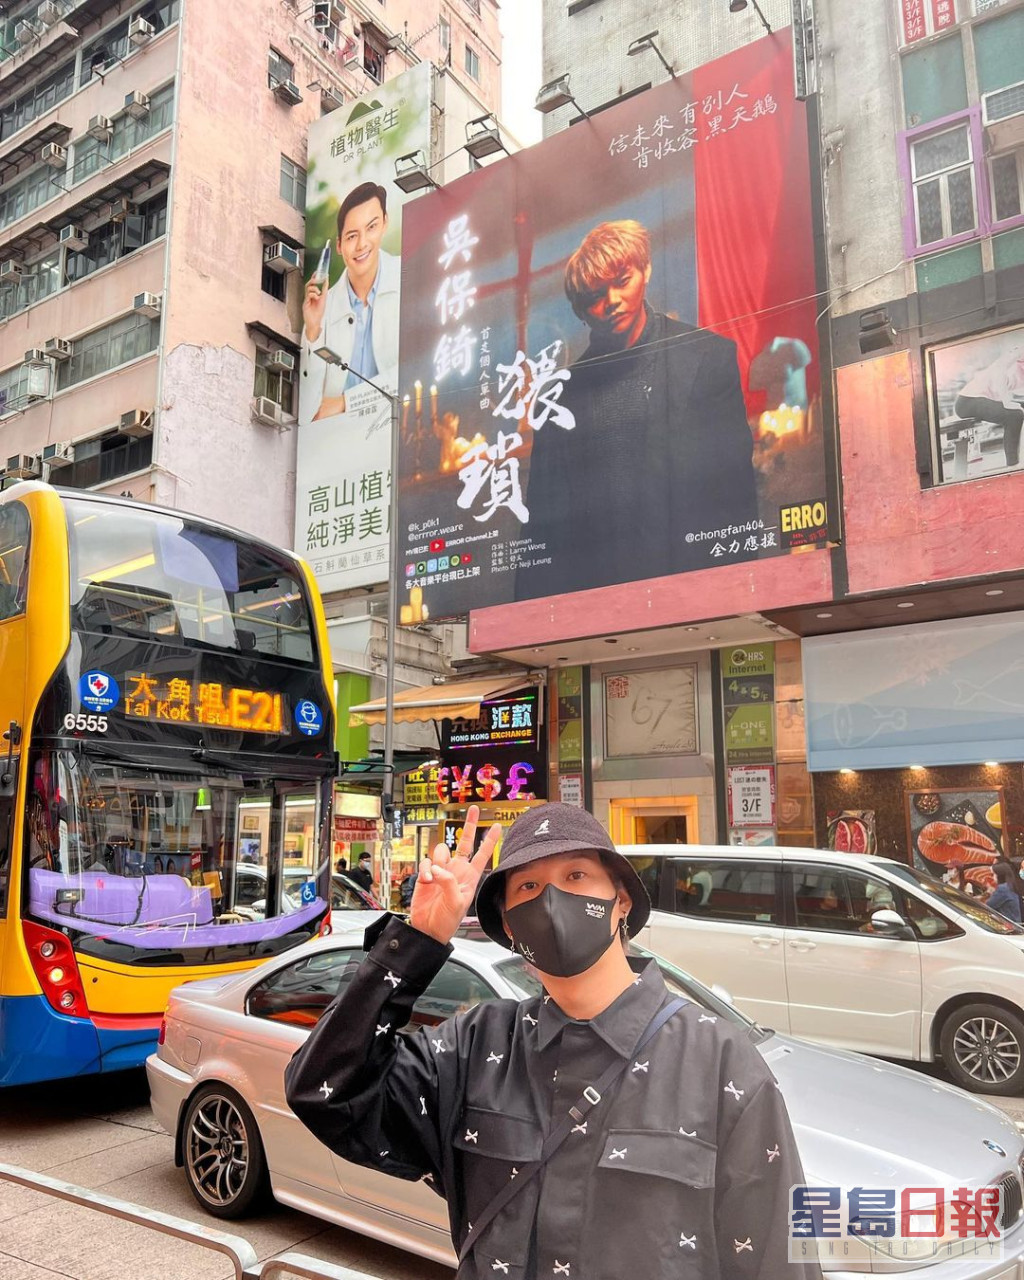 保锜话好开心自己的海报在偶像陈伟霆的广告旁边出现。